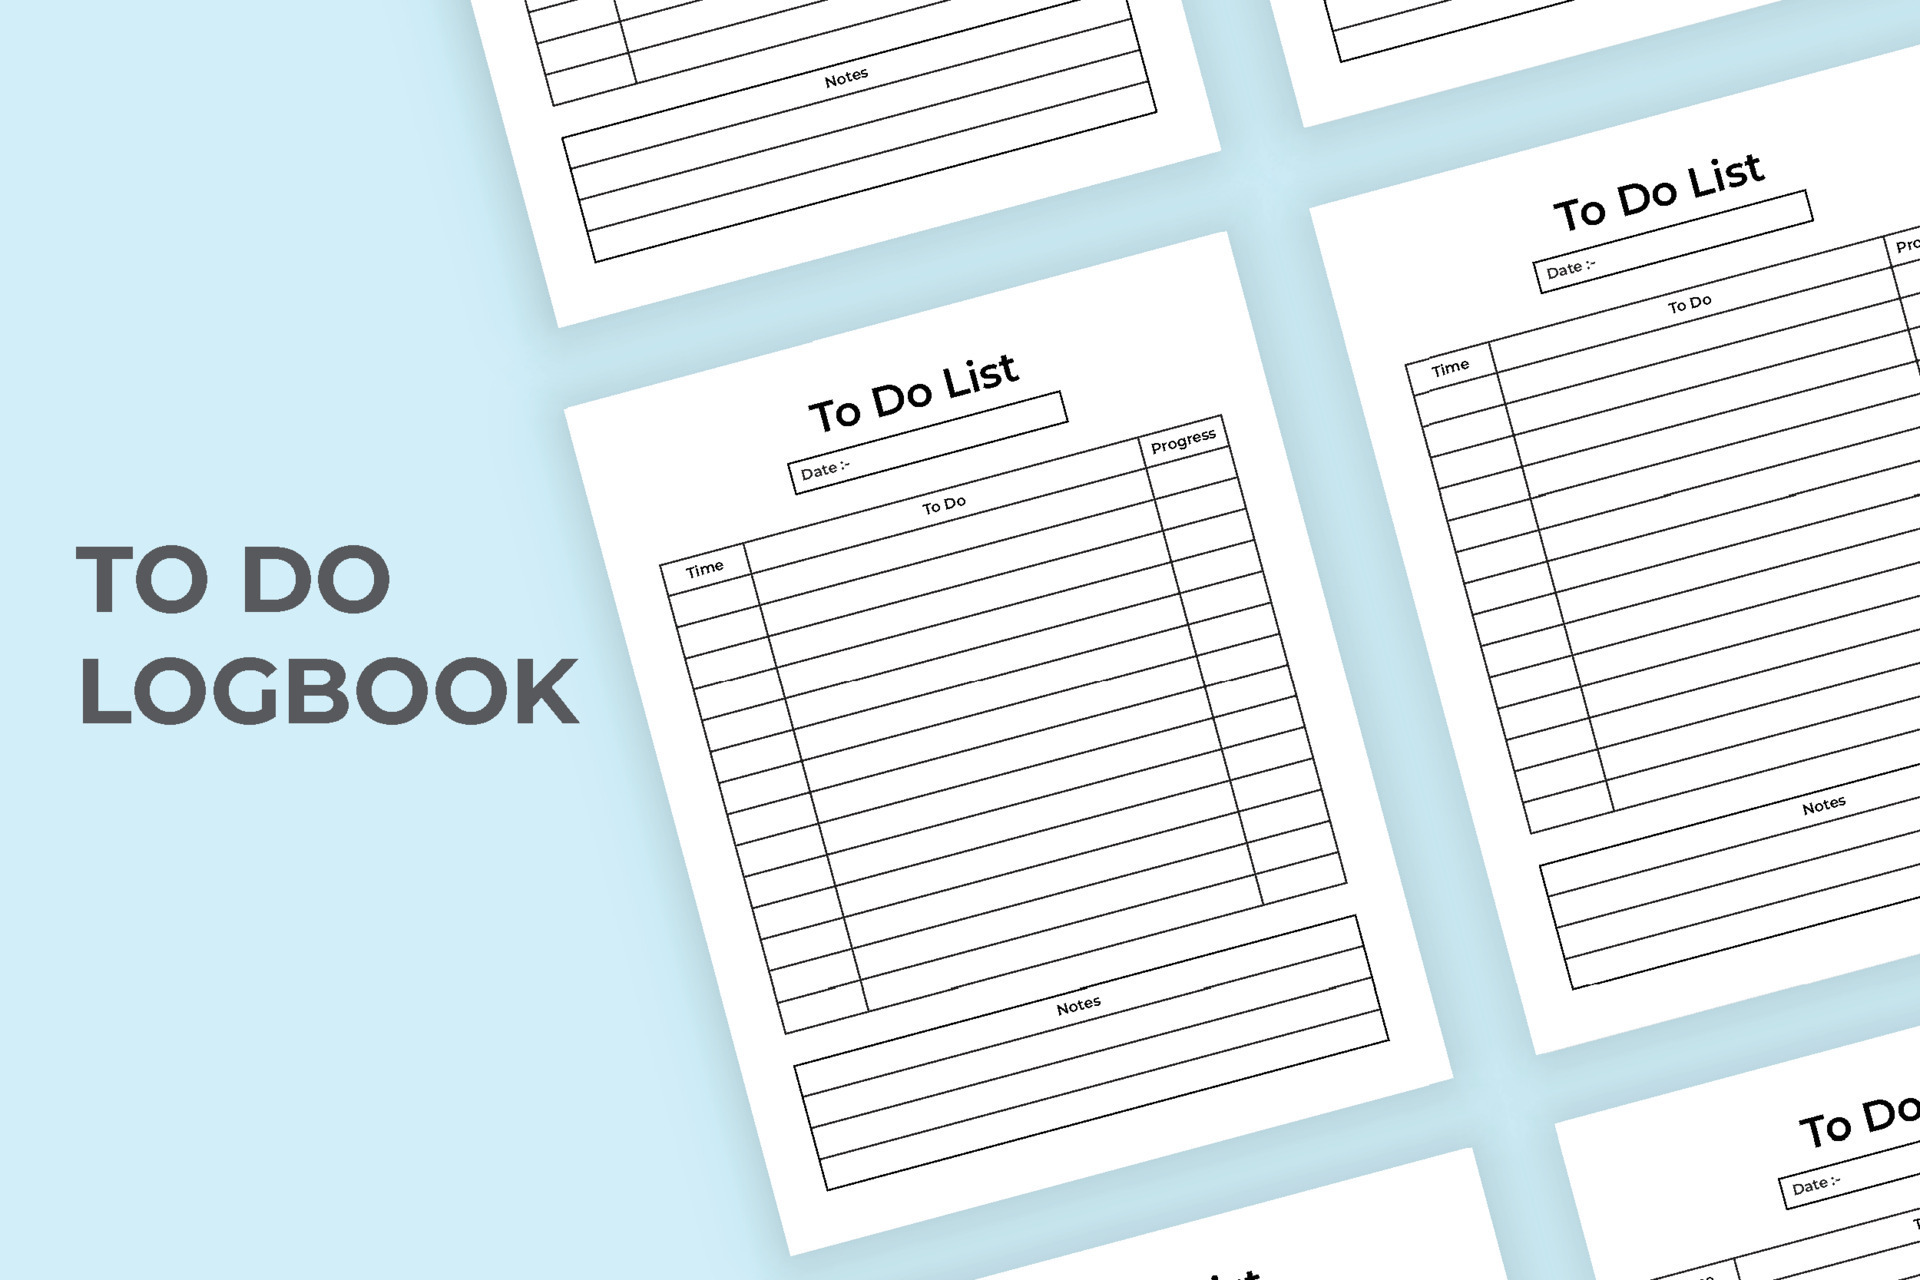 To Do List: Carnet de listes - planning des tâches et notes quotidiennes -  100 pages format 15.24 x 22.86 cm